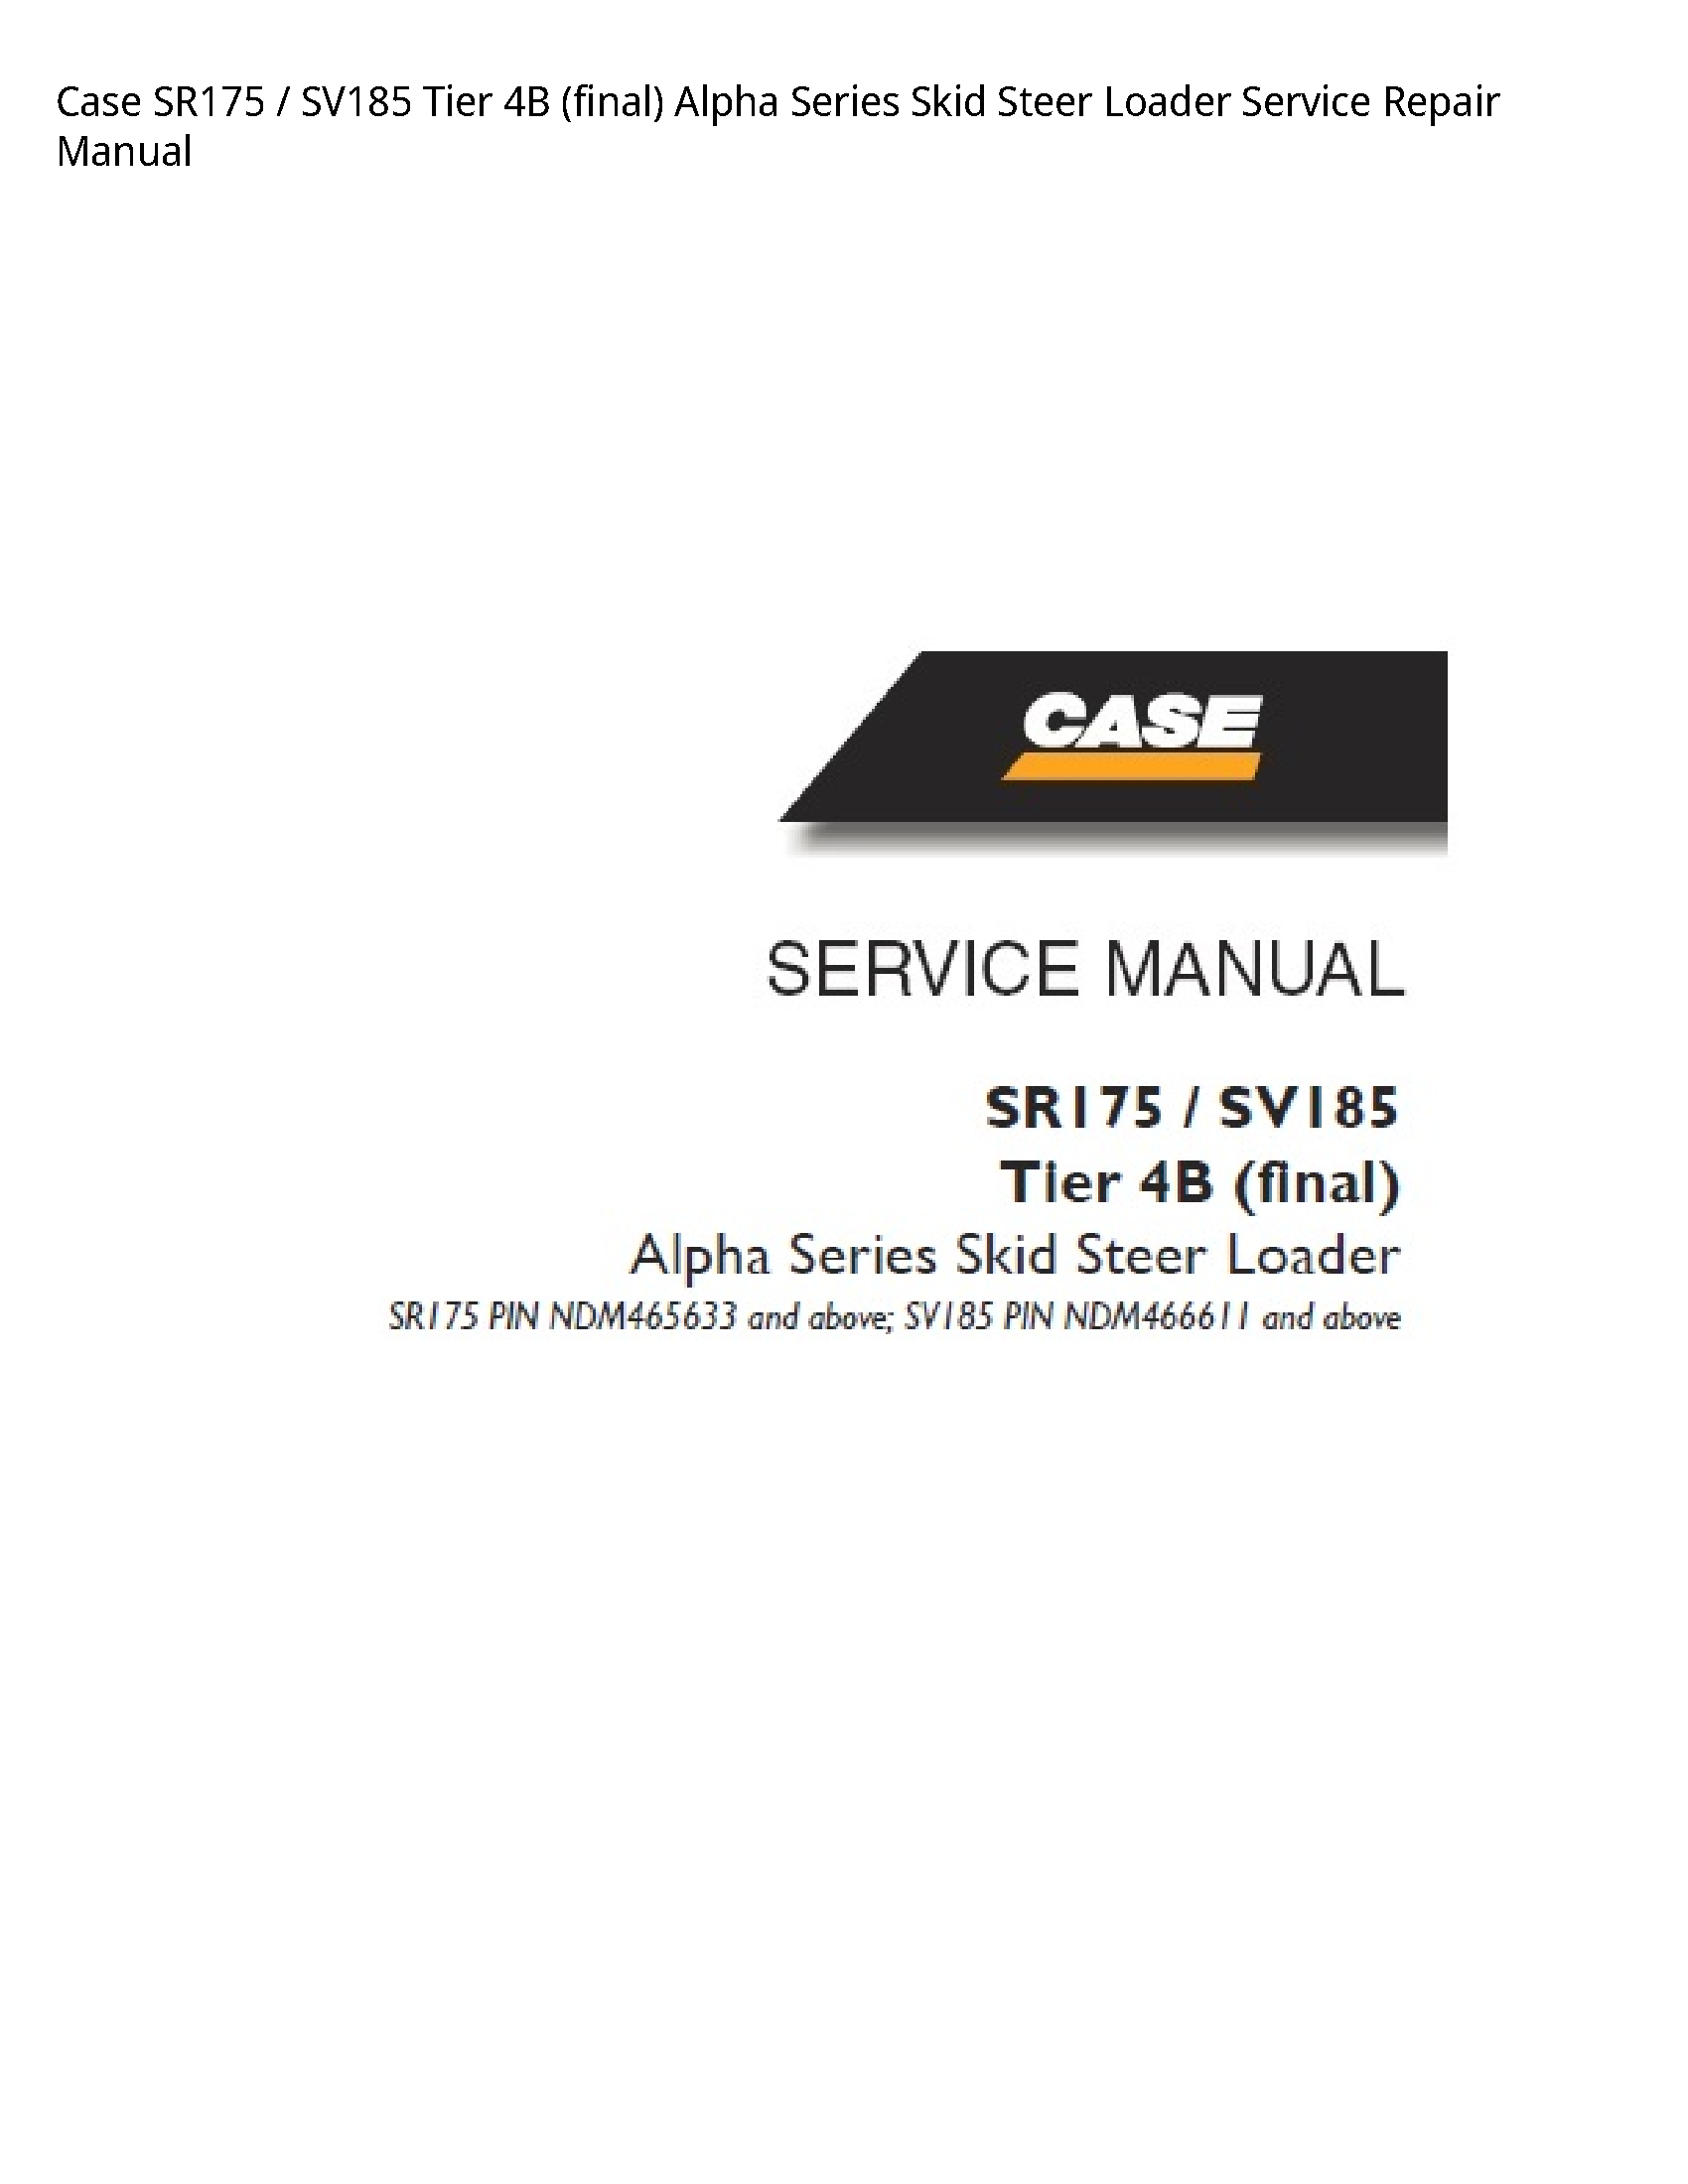 Case/Case IH SR175 Tier (final) Alpha Series Skid Steer Loader manual